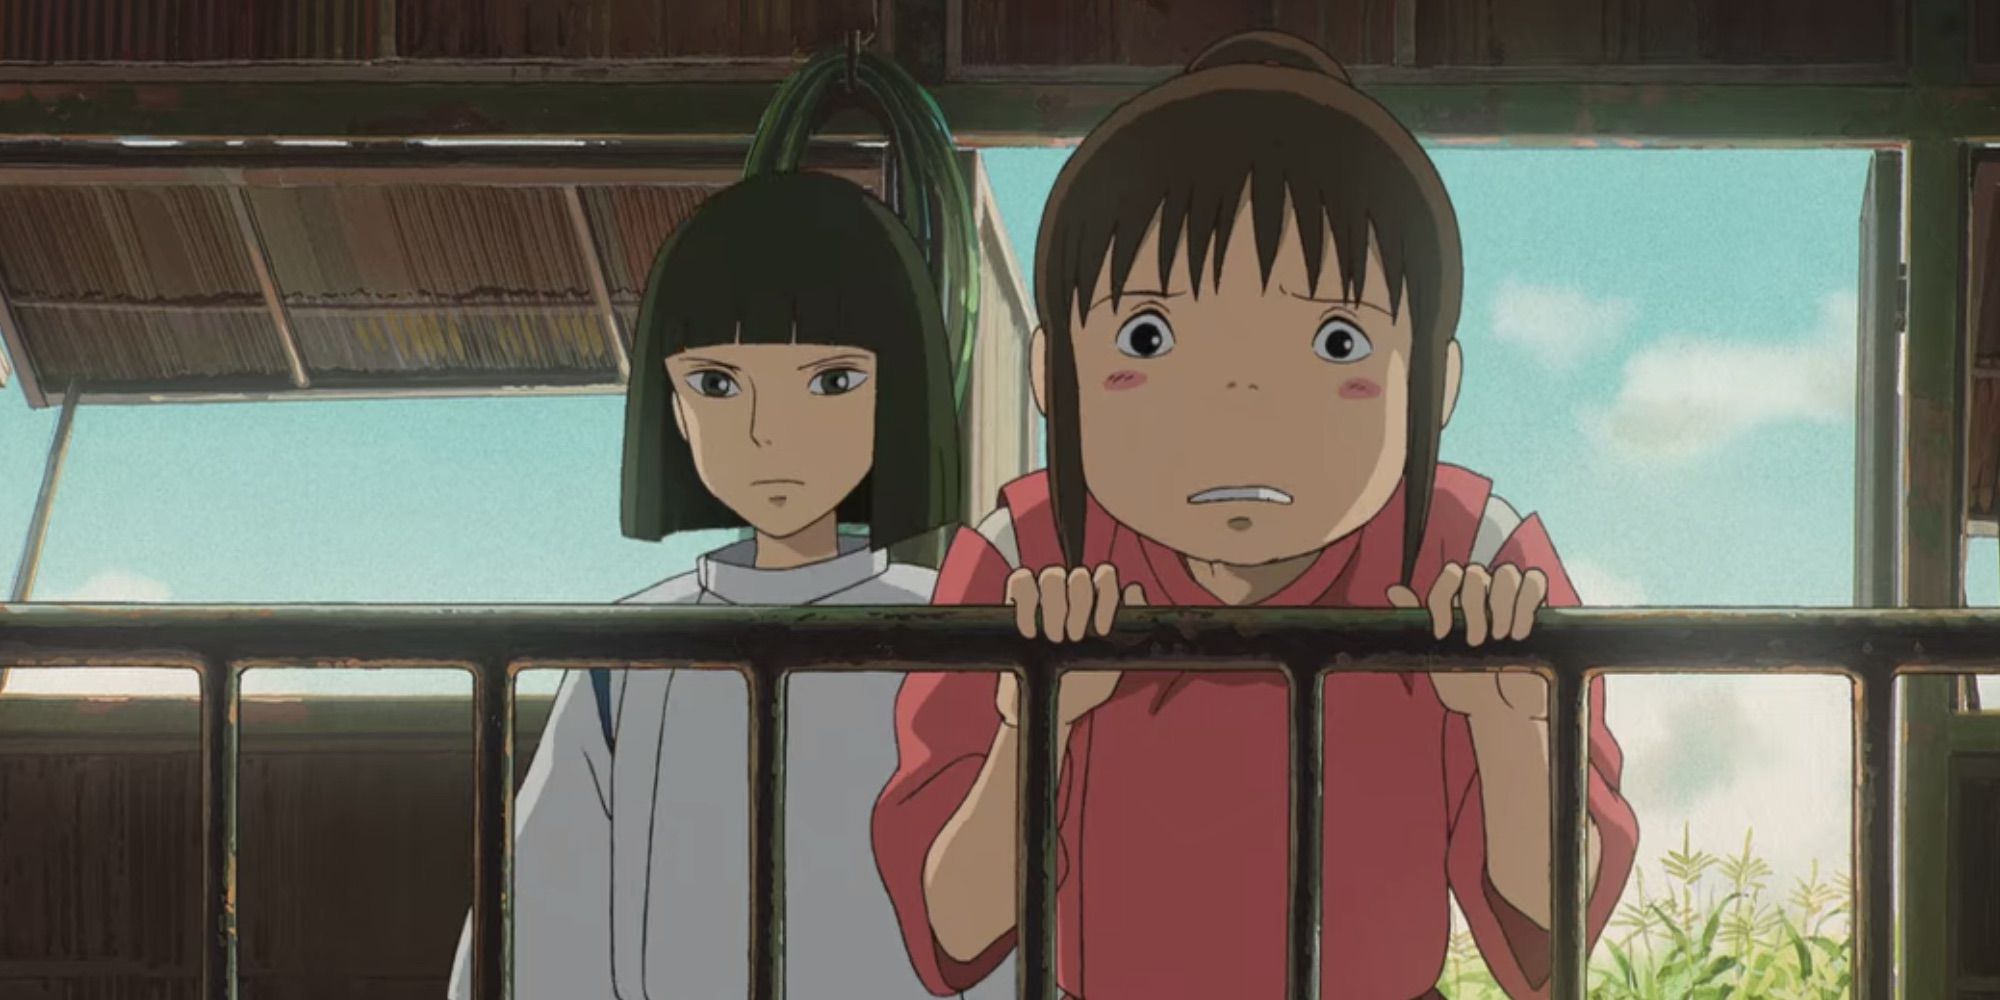 Chihiro and Haku visit Chihiro's parents in Spirited Away